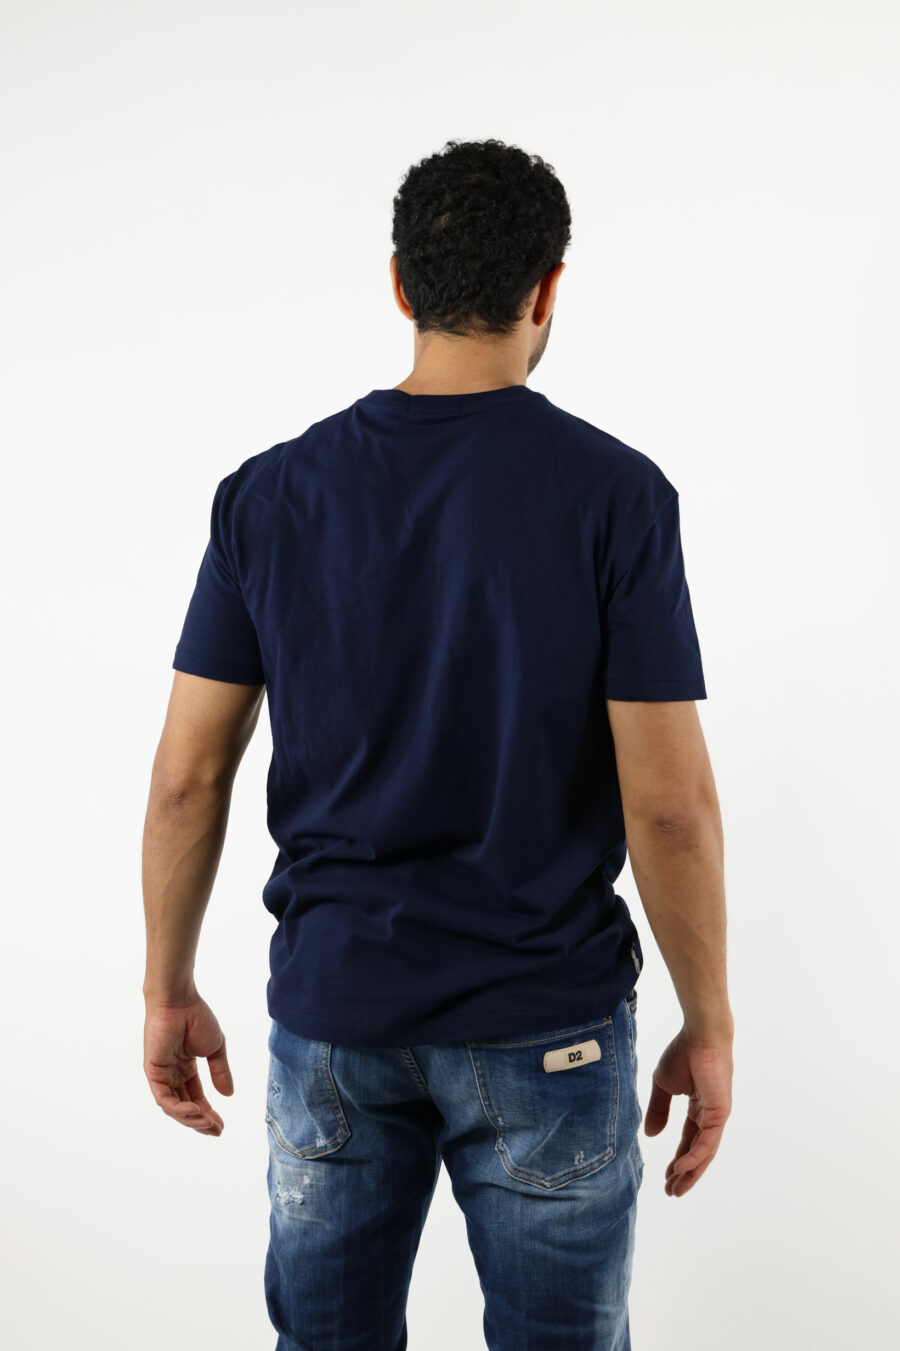 Camiseta azul oscuro con maxilogo "polo" blanco - 111237